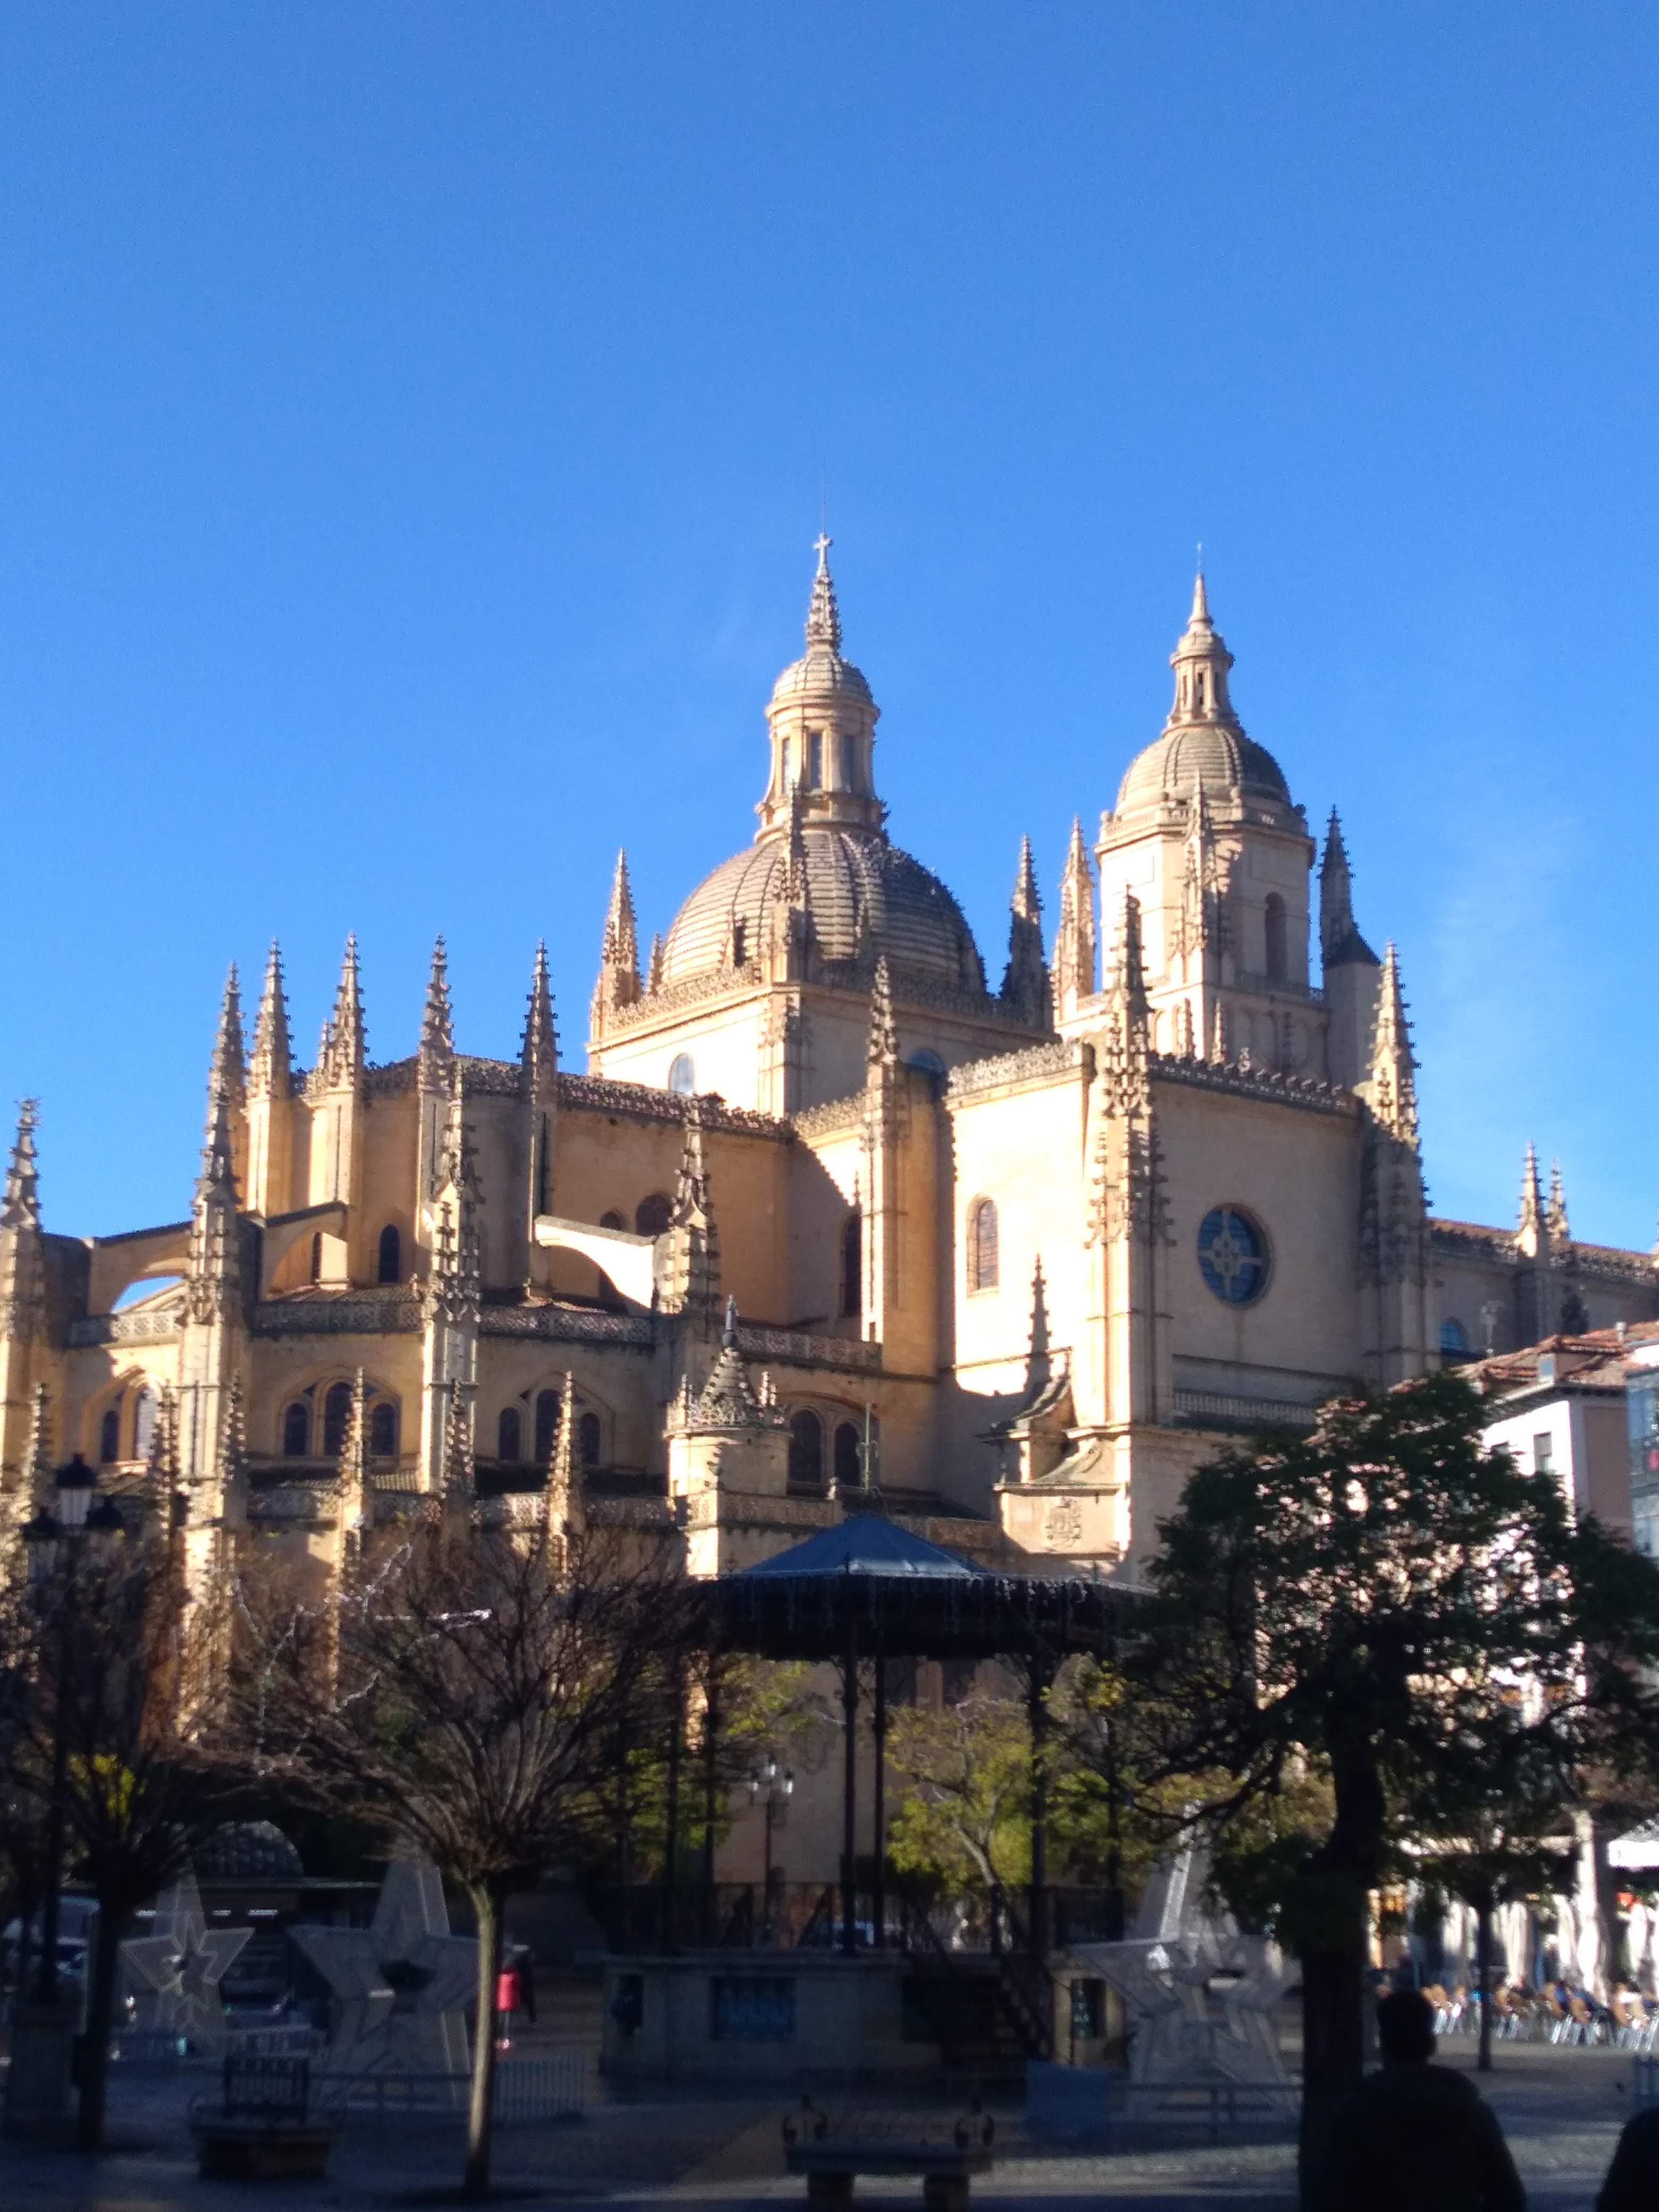 On-day-Tour-Segovia-Tour-with-tickets-4